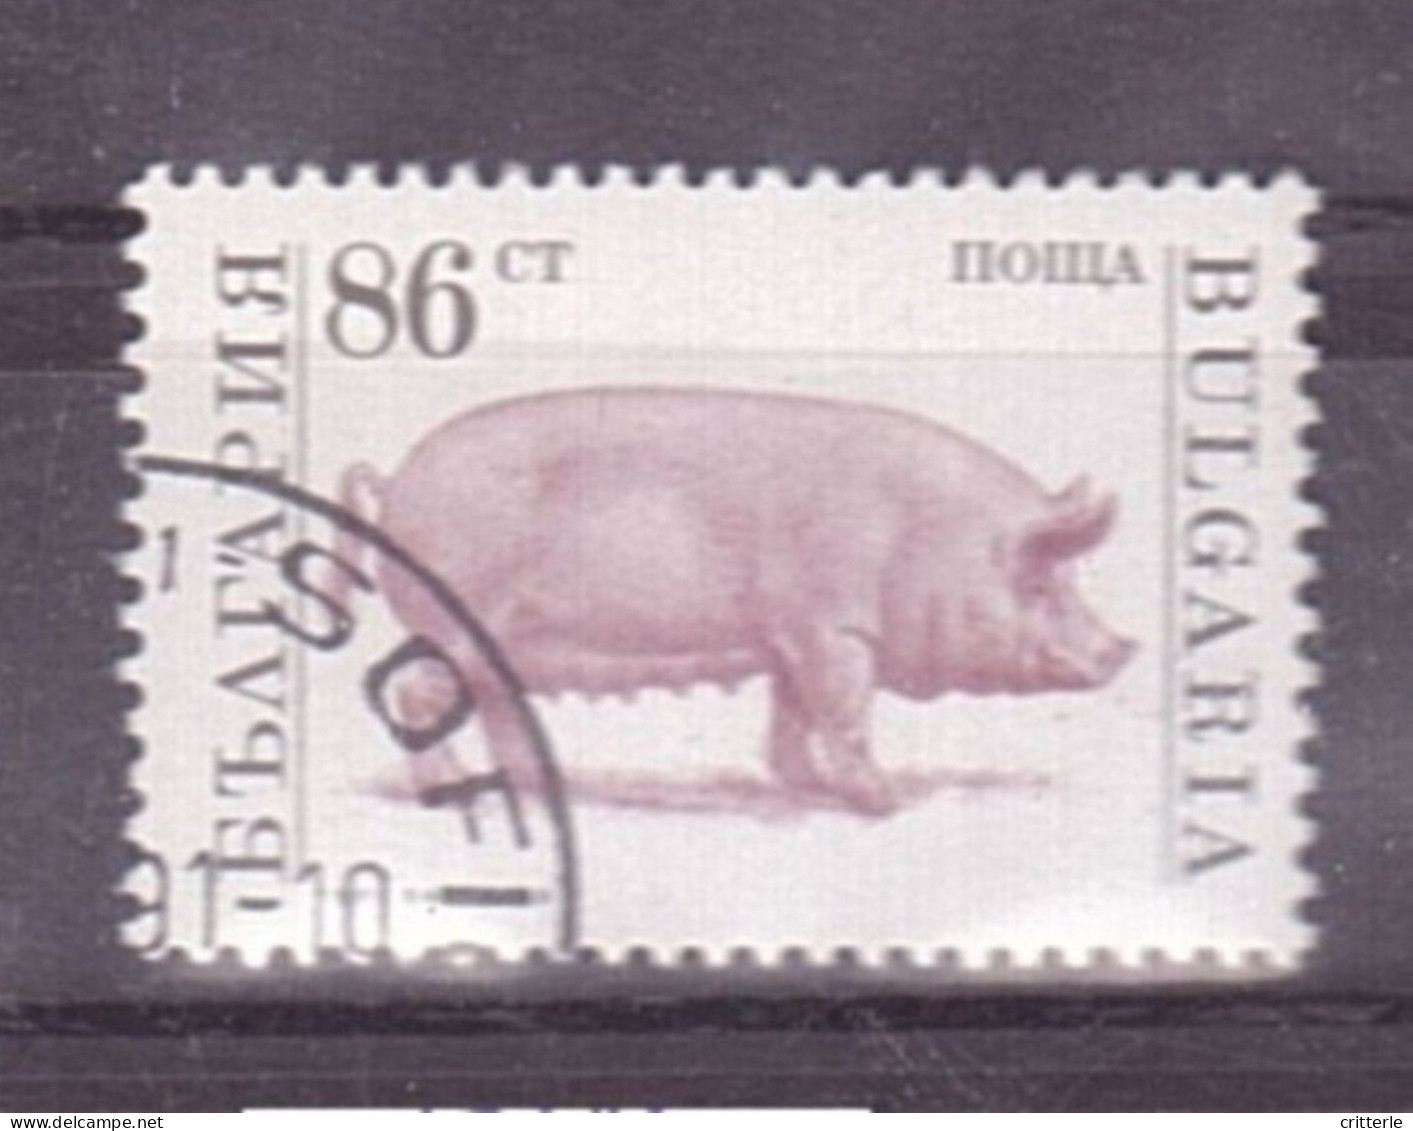 Bulgarien Michel Nr. 3926 Gestempelt - Used Stamps